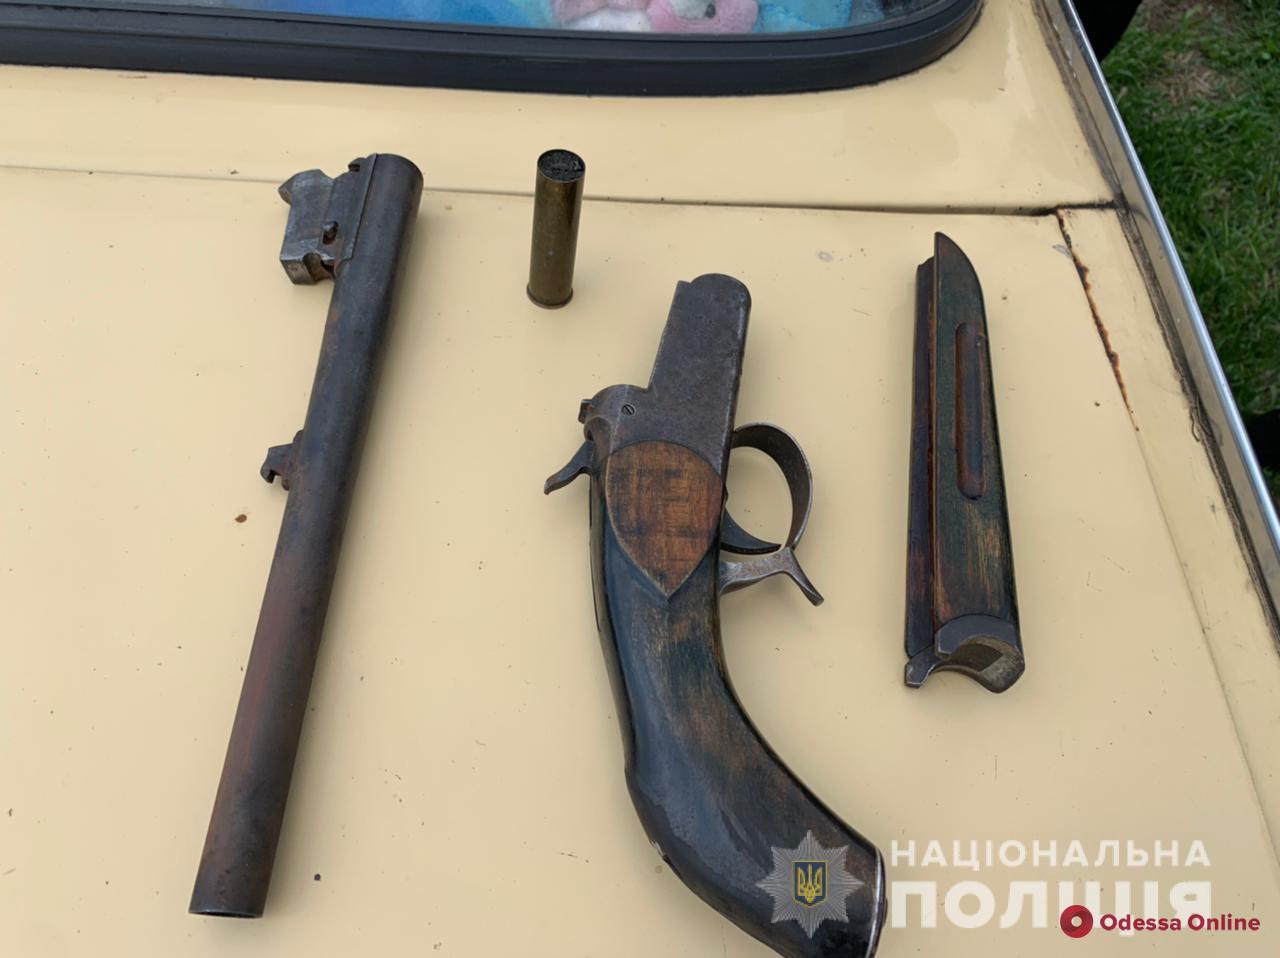 Попавшийся на хранении оружия и нарушении ПДД житель Одесской области пытался откупиться от полицейских